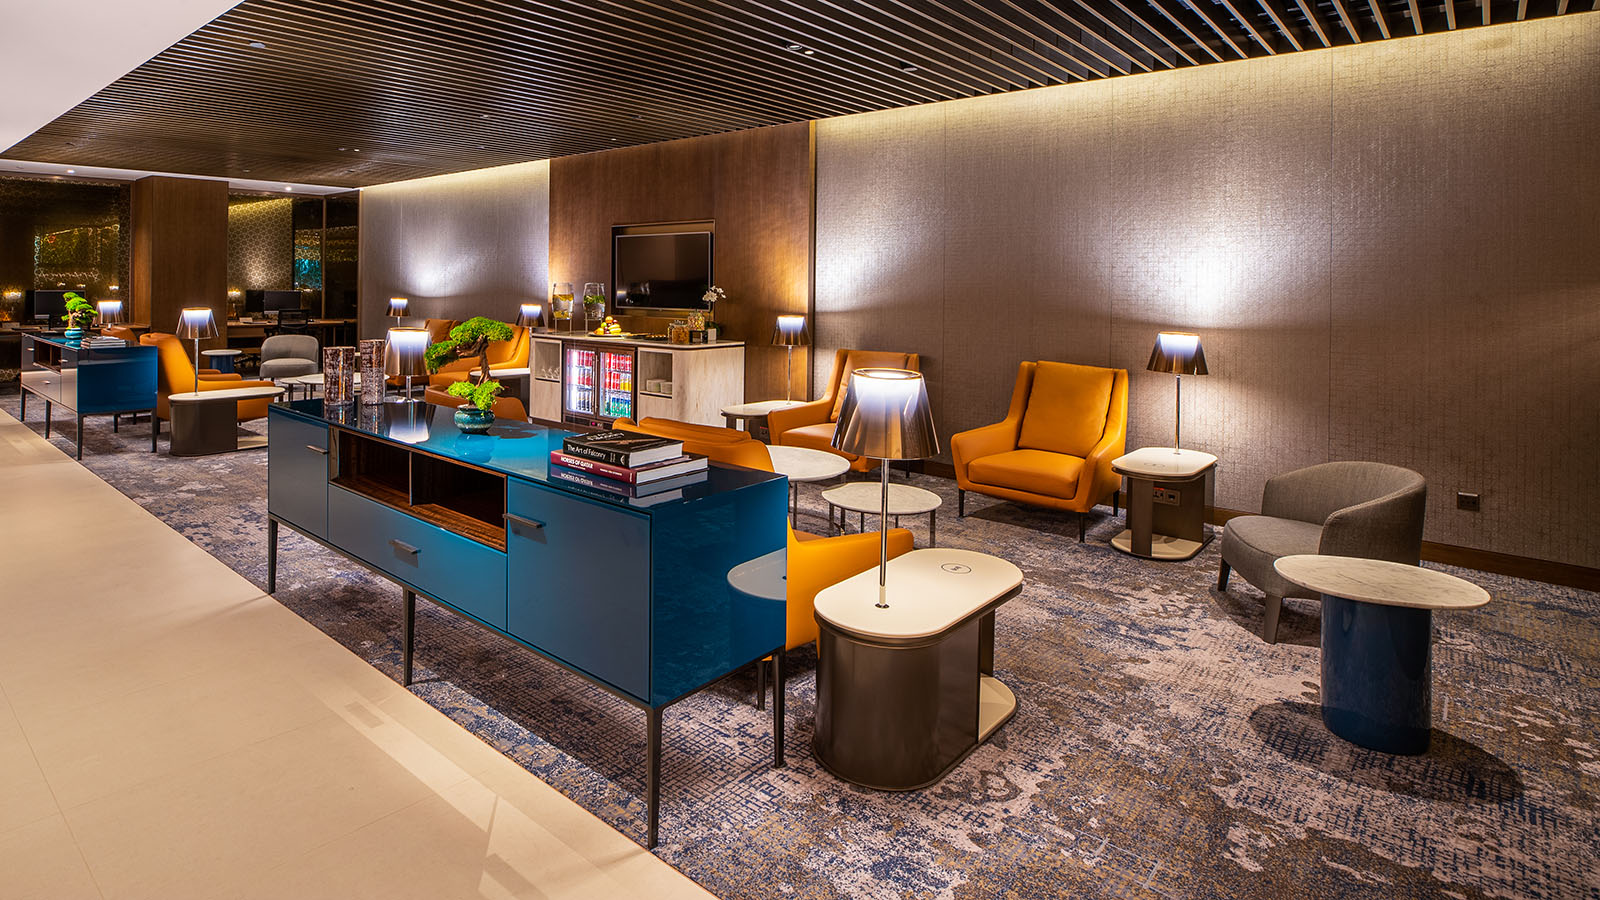 Qatar Airways Premium Lounge, Singapore